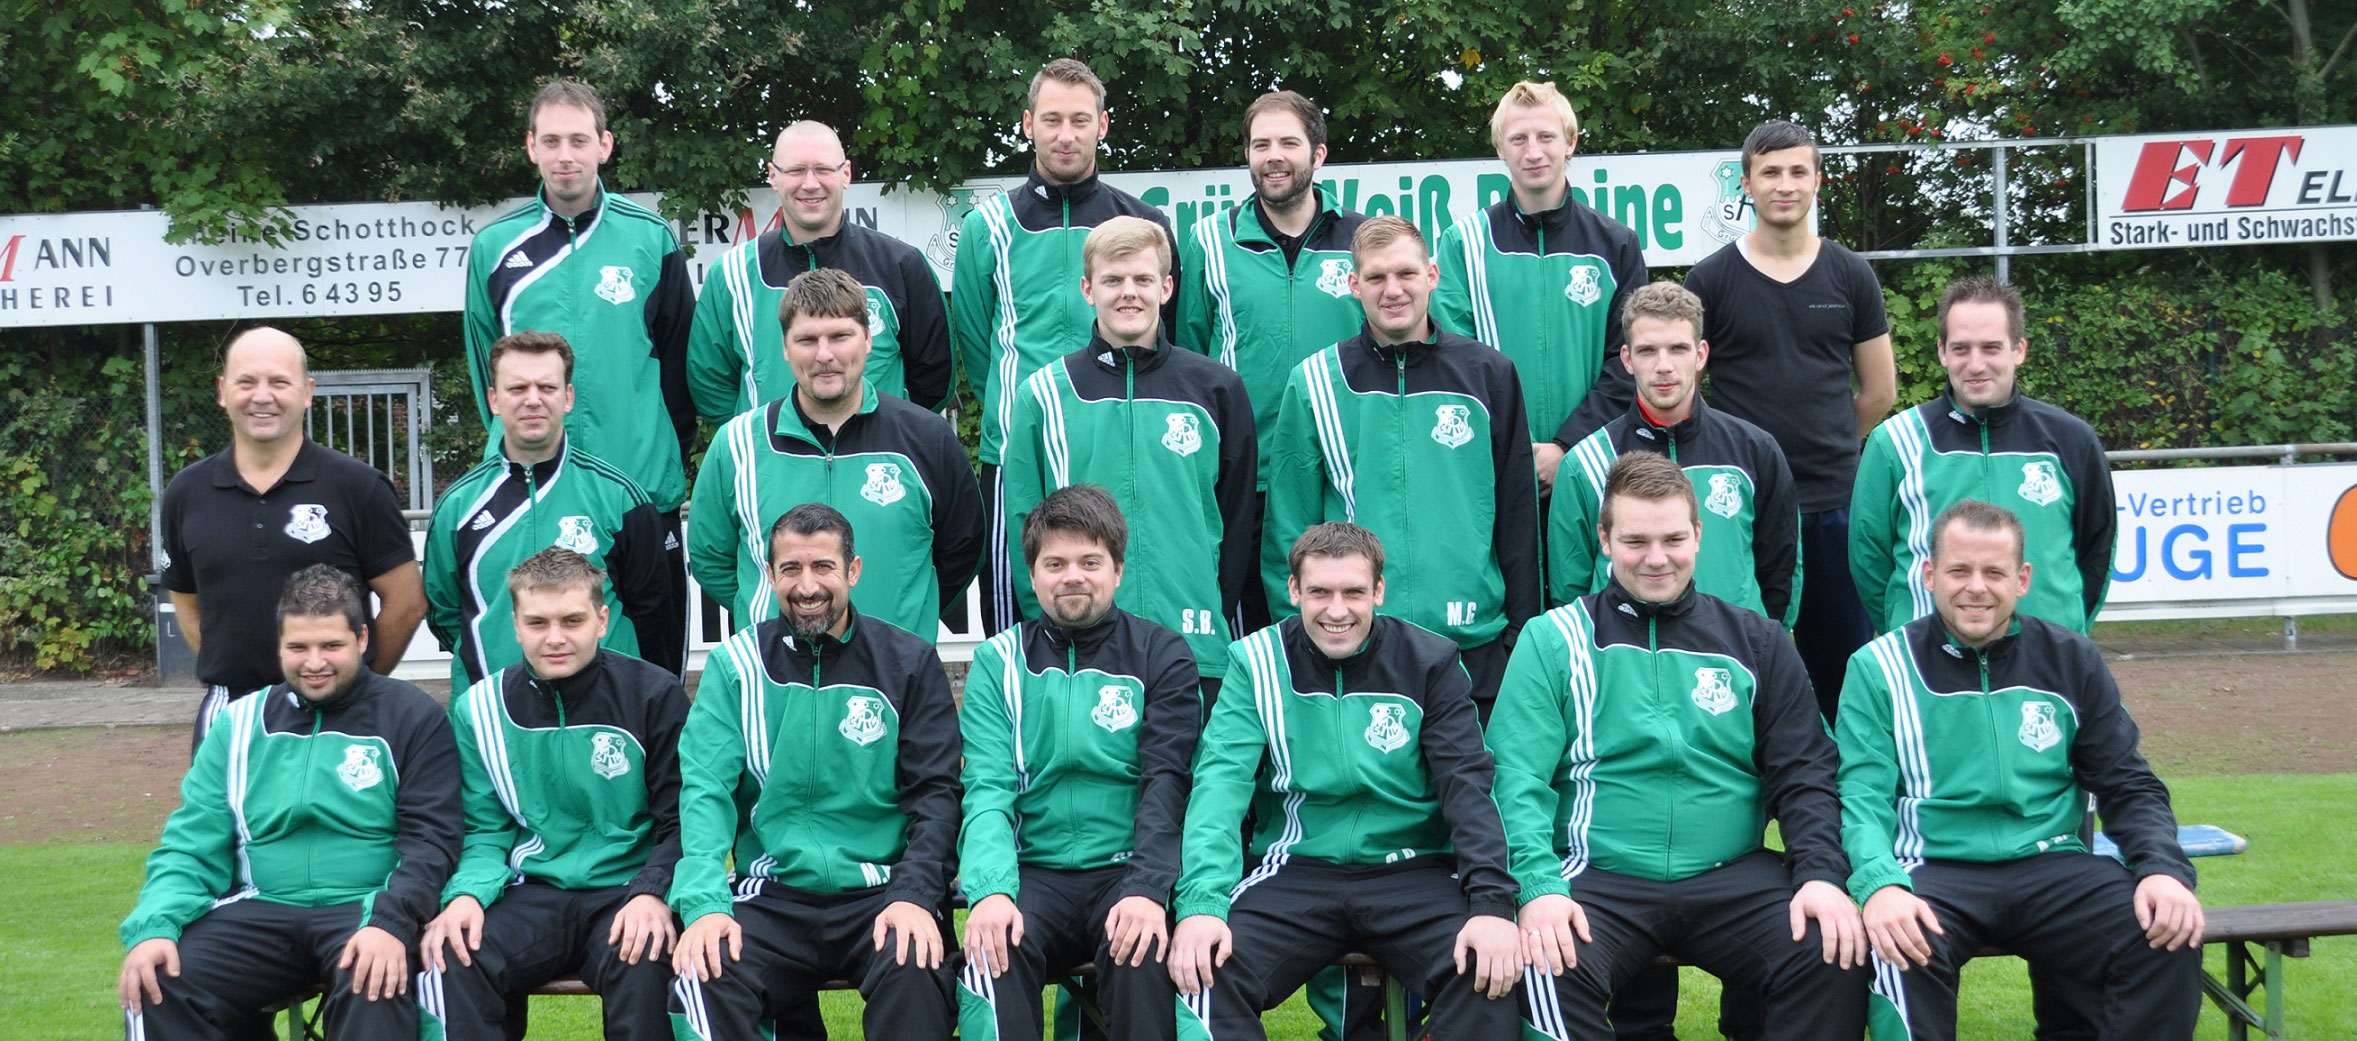 Mannschaftsfoto/Teamfoto von SV Grn-Wei Rheine 3